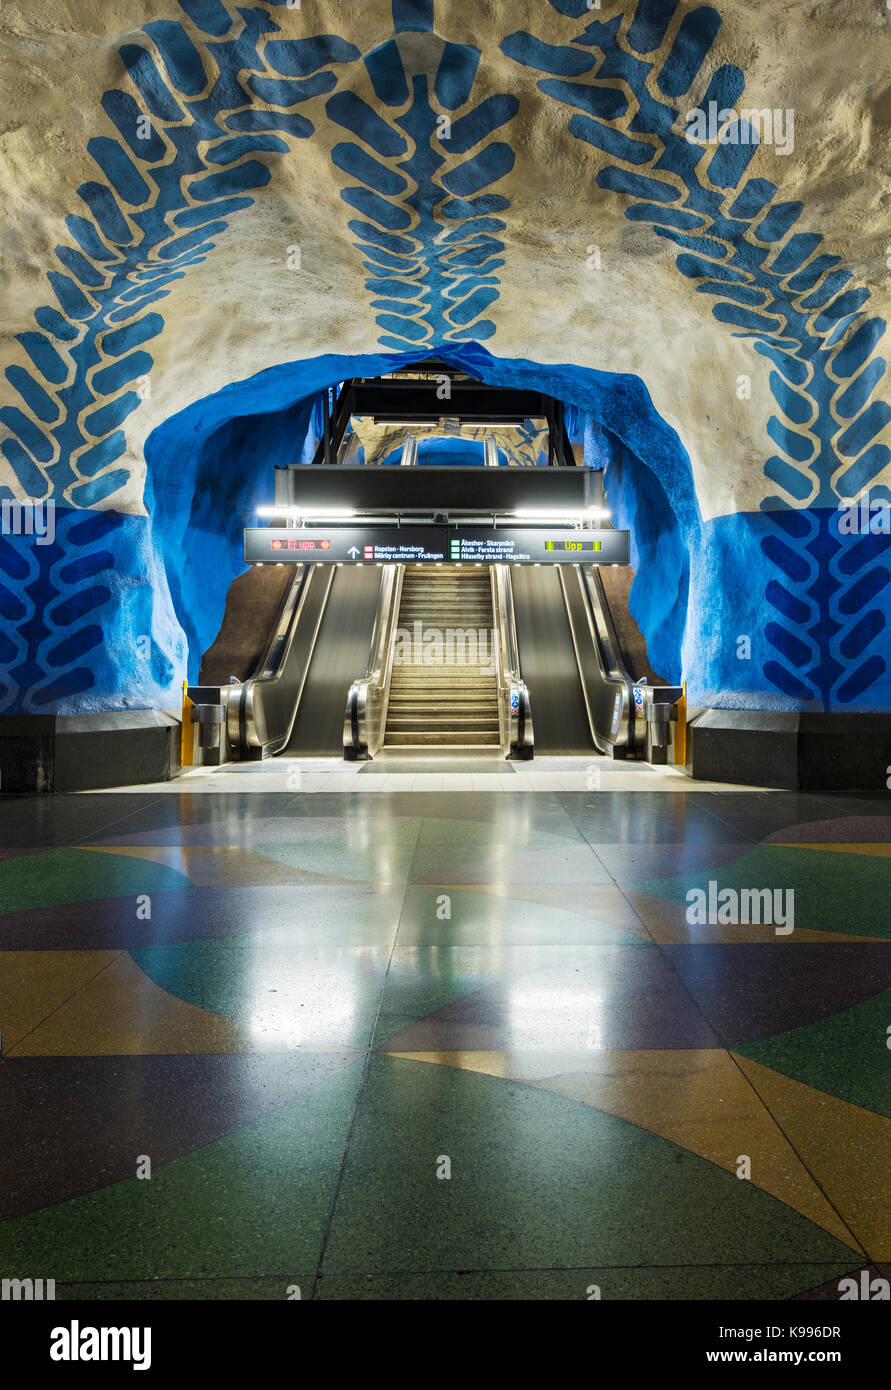 T-Centralen station sur le métro de Stockholm, ou T-Bana, en Suède. Le métro de Stockholm est considéré comme le plus ancien musée d'art dans le monde. Banque D'Images